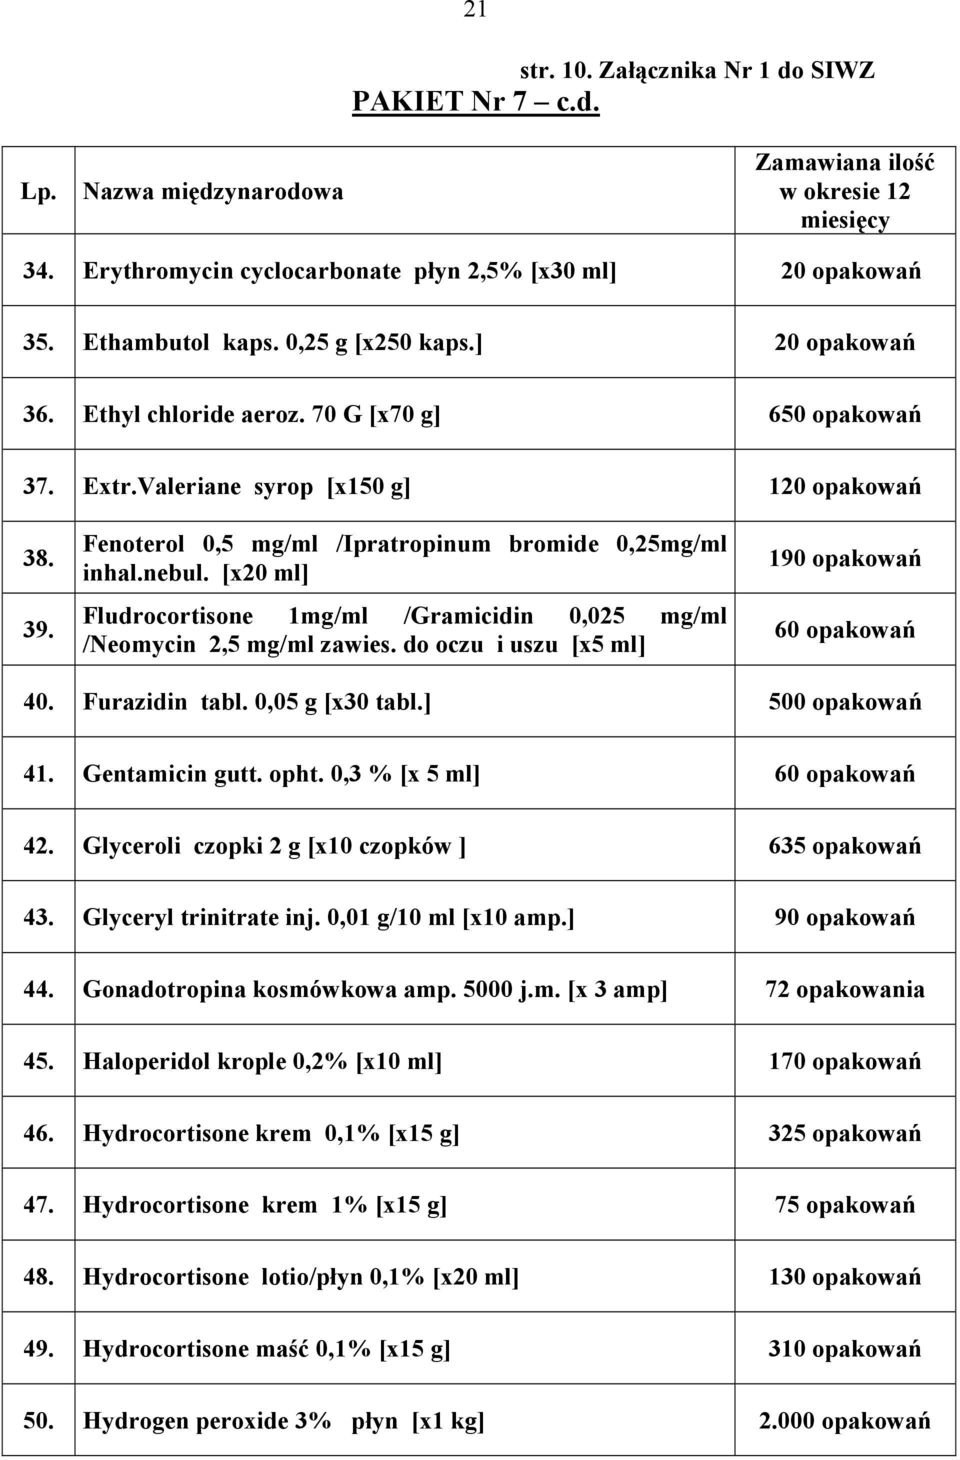 [x20 ml] Fludrocortisone 1mg/ml /Gramicidin 0,025 mg/ml /Neomycin 2,5 mg/ml zawies. do oczu i uszu [x5 ml] 190 opakowań 60 opakowań 40. Furazidin tabl. 0,05 g [x30 tabl.] 500 opakowań 41.